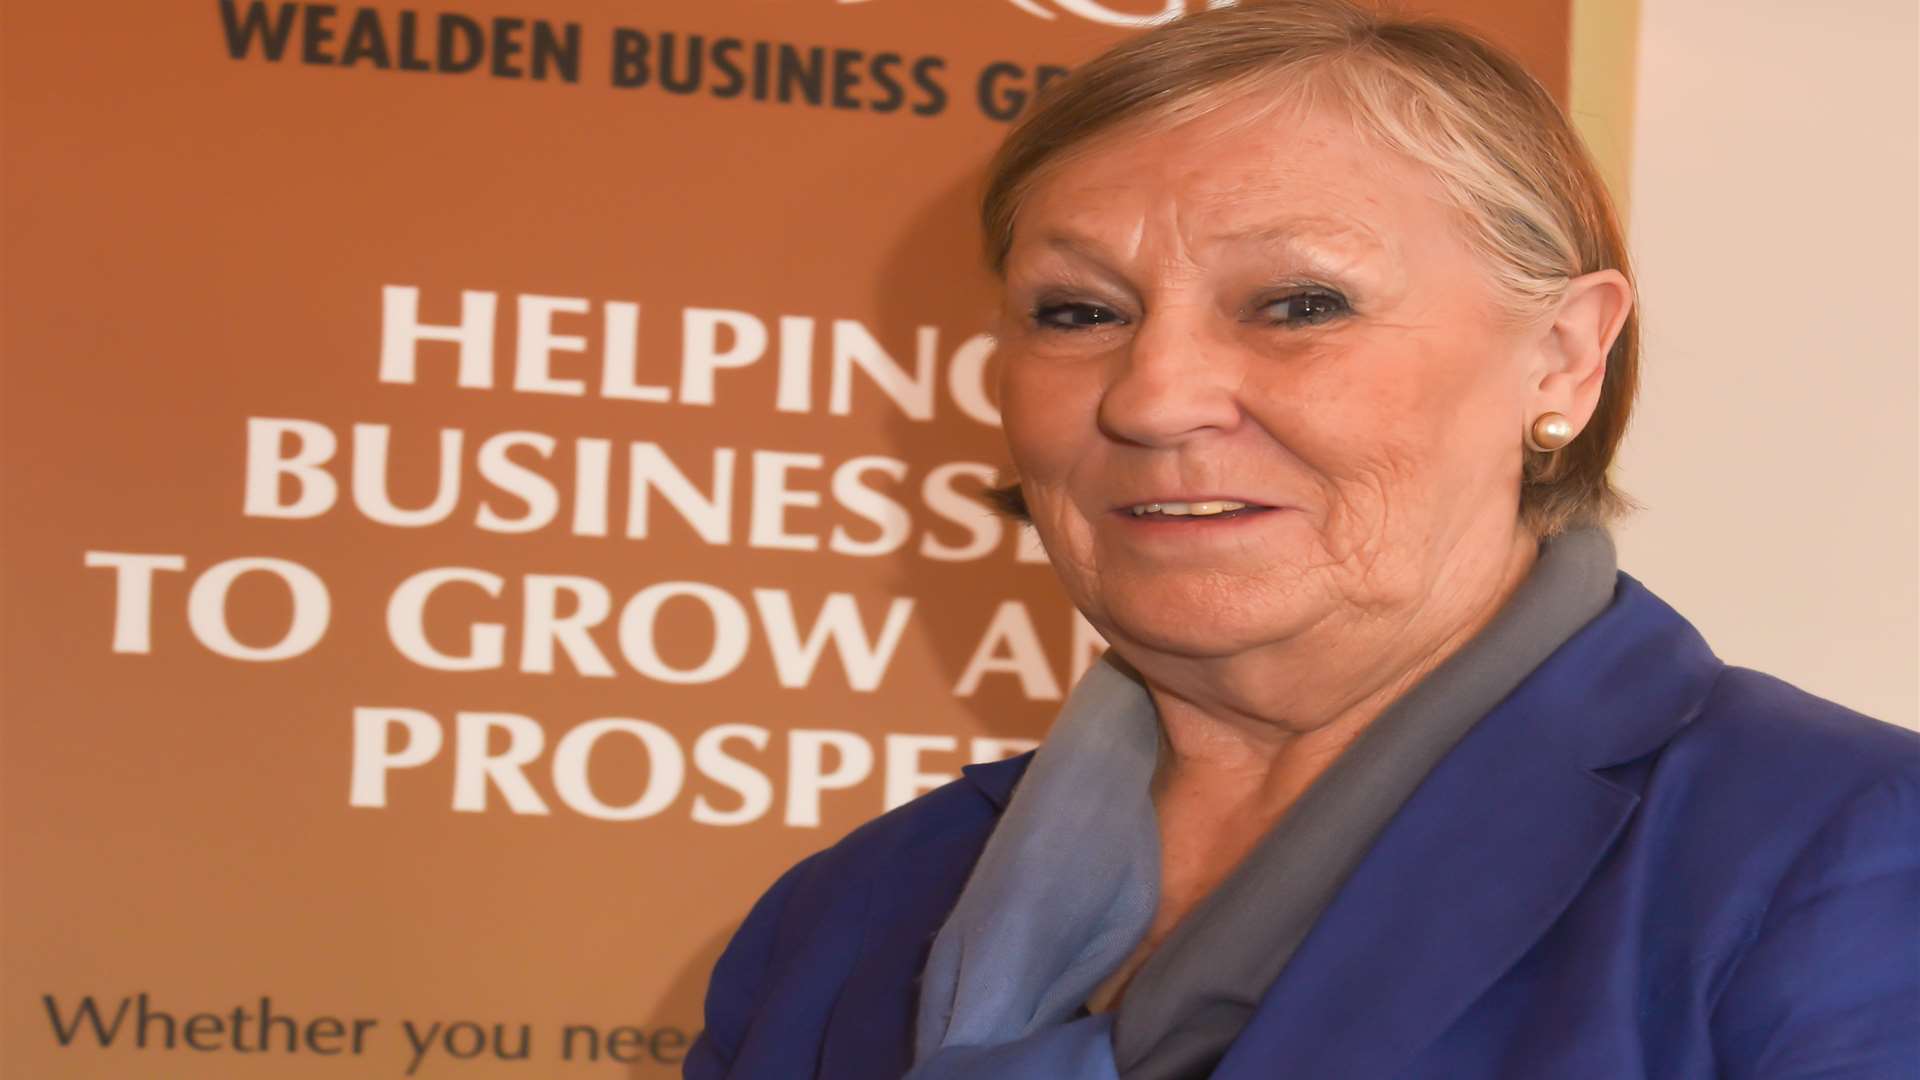 Dee Bateman has been elected chair of the Wealden Business Group